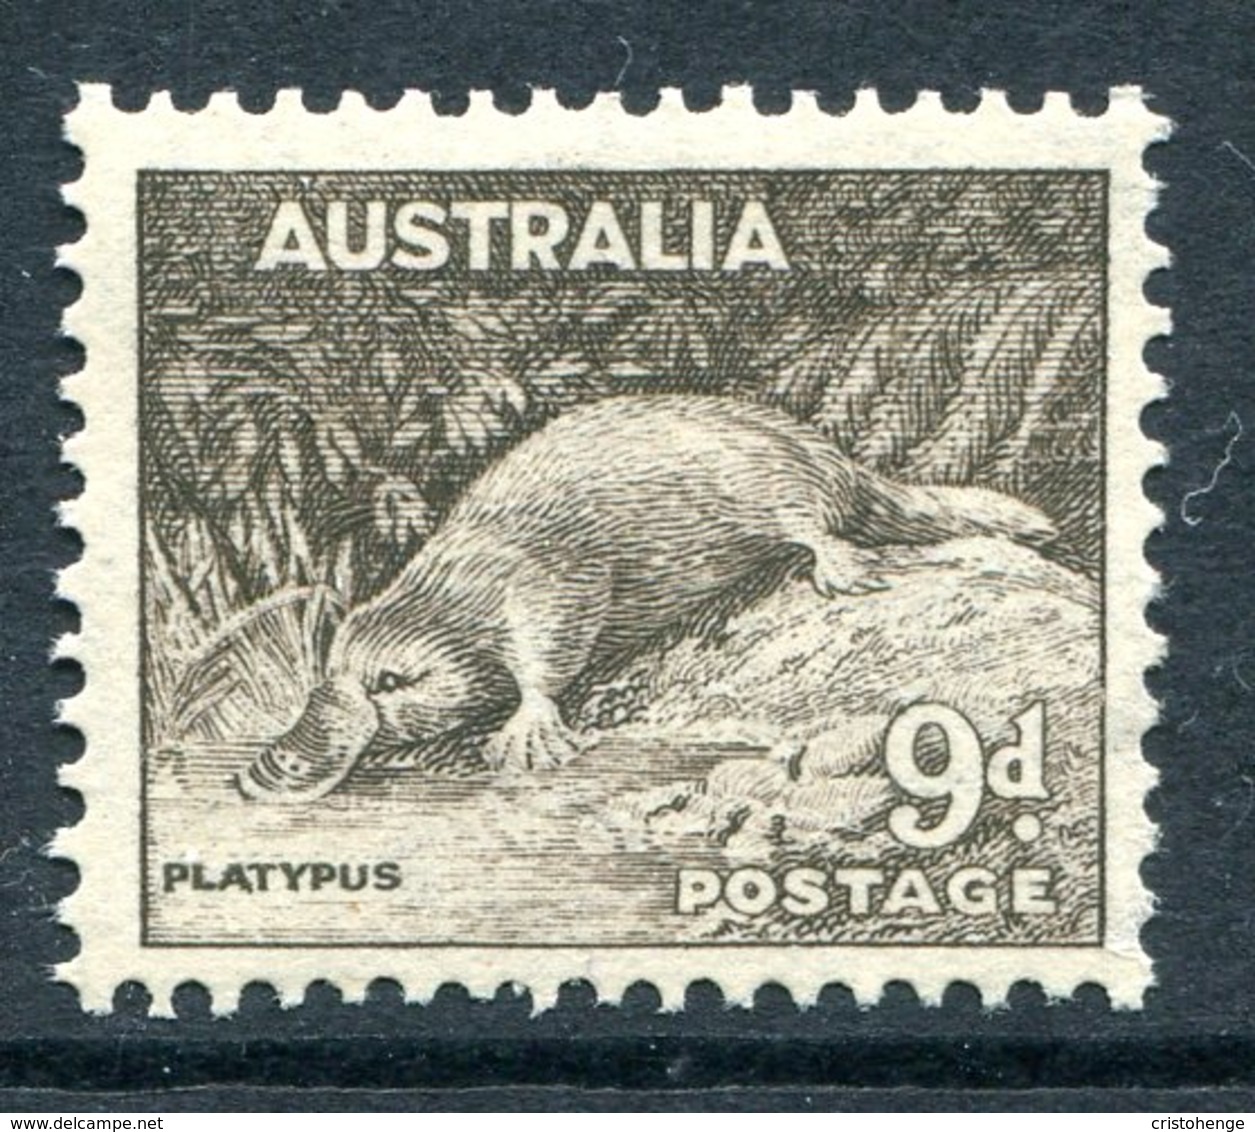 Australia 1937-49 KGVI Definitives (p.13½ X 14) - 9d Platypus LHM (SG 173) - Mint Stamps